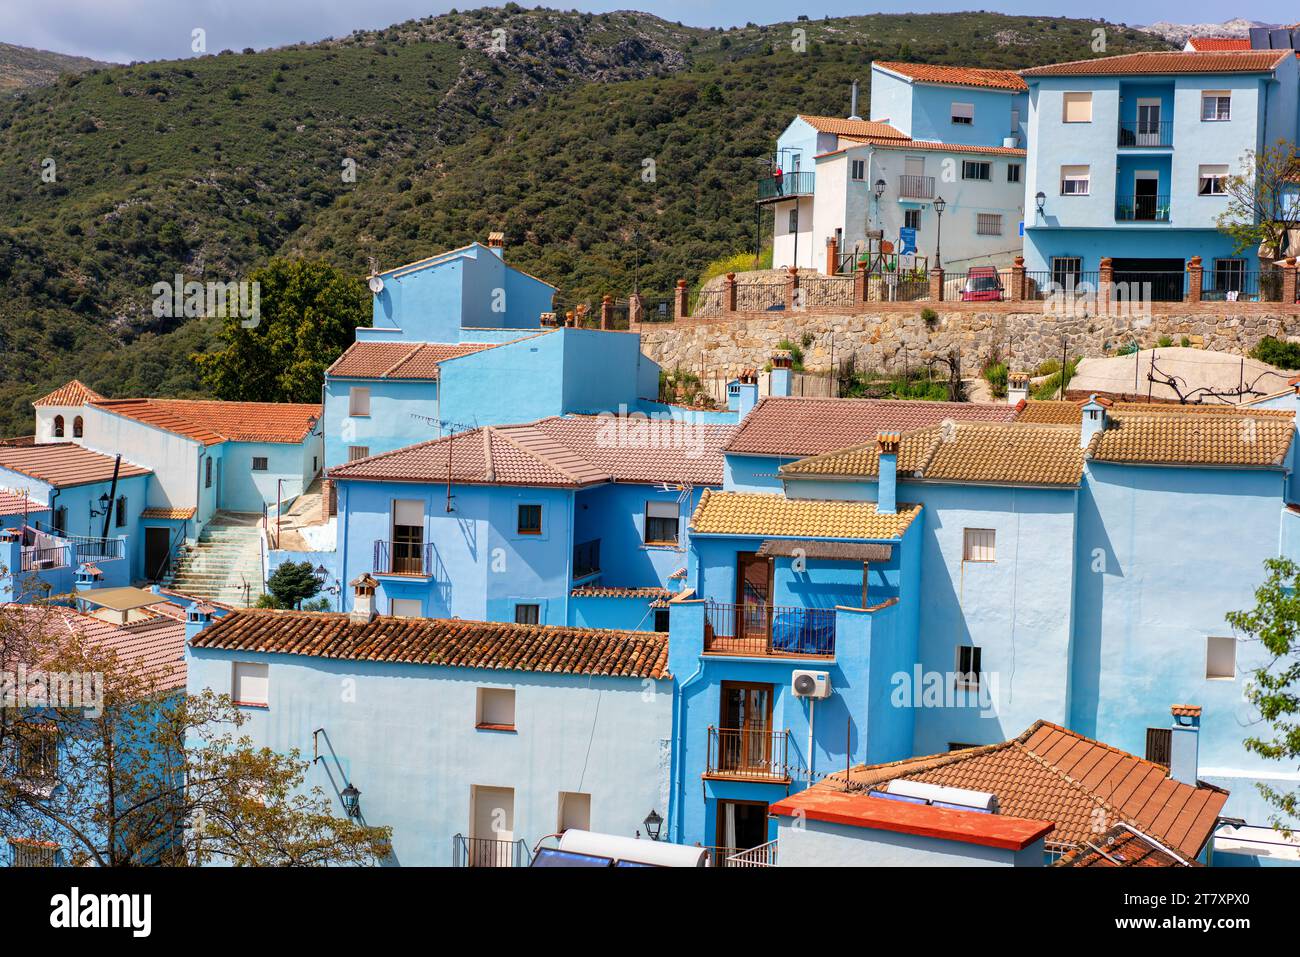 Straße in blau lackiertem Schlumpfhaus Dorf Juzcar, Pueblos Blancos Region, Andalusien, Spanien, Europa Stockfoto